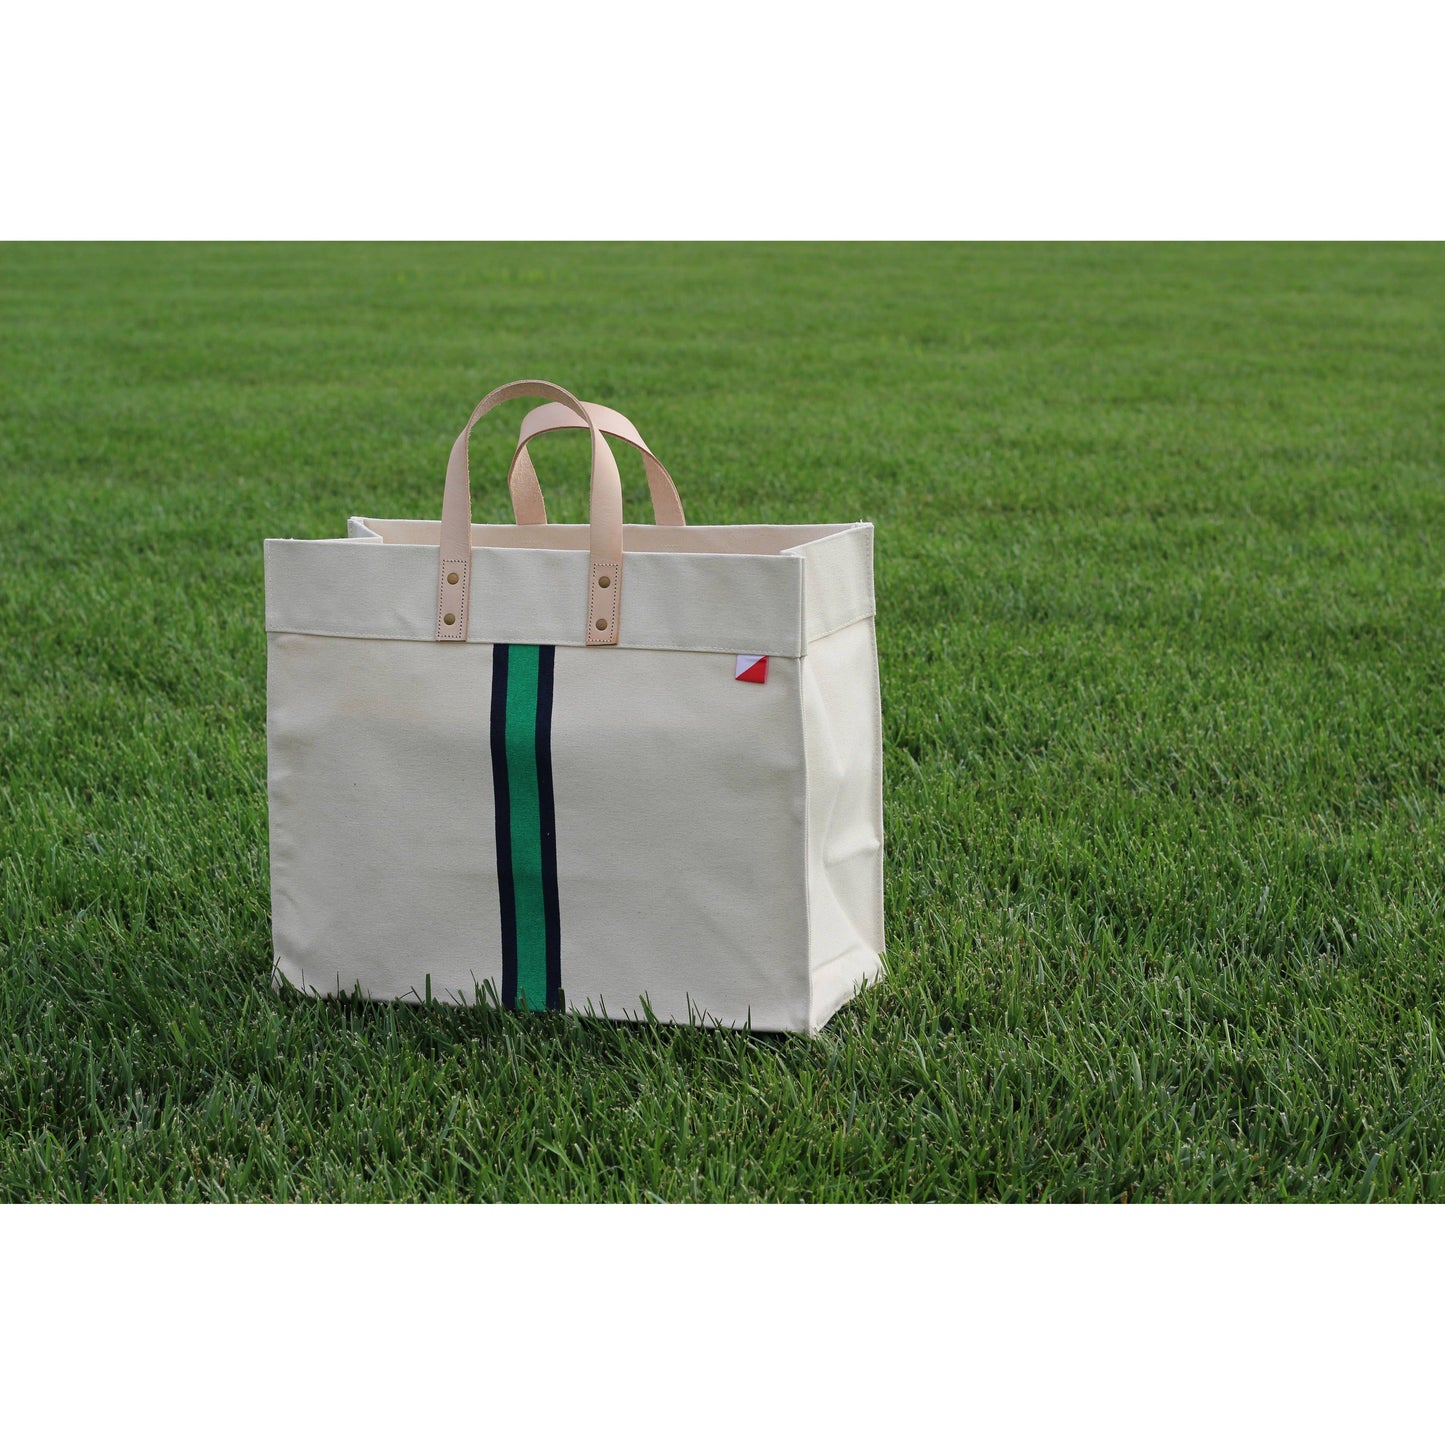 Heavy Canvas Tote Bag, Green Stripe